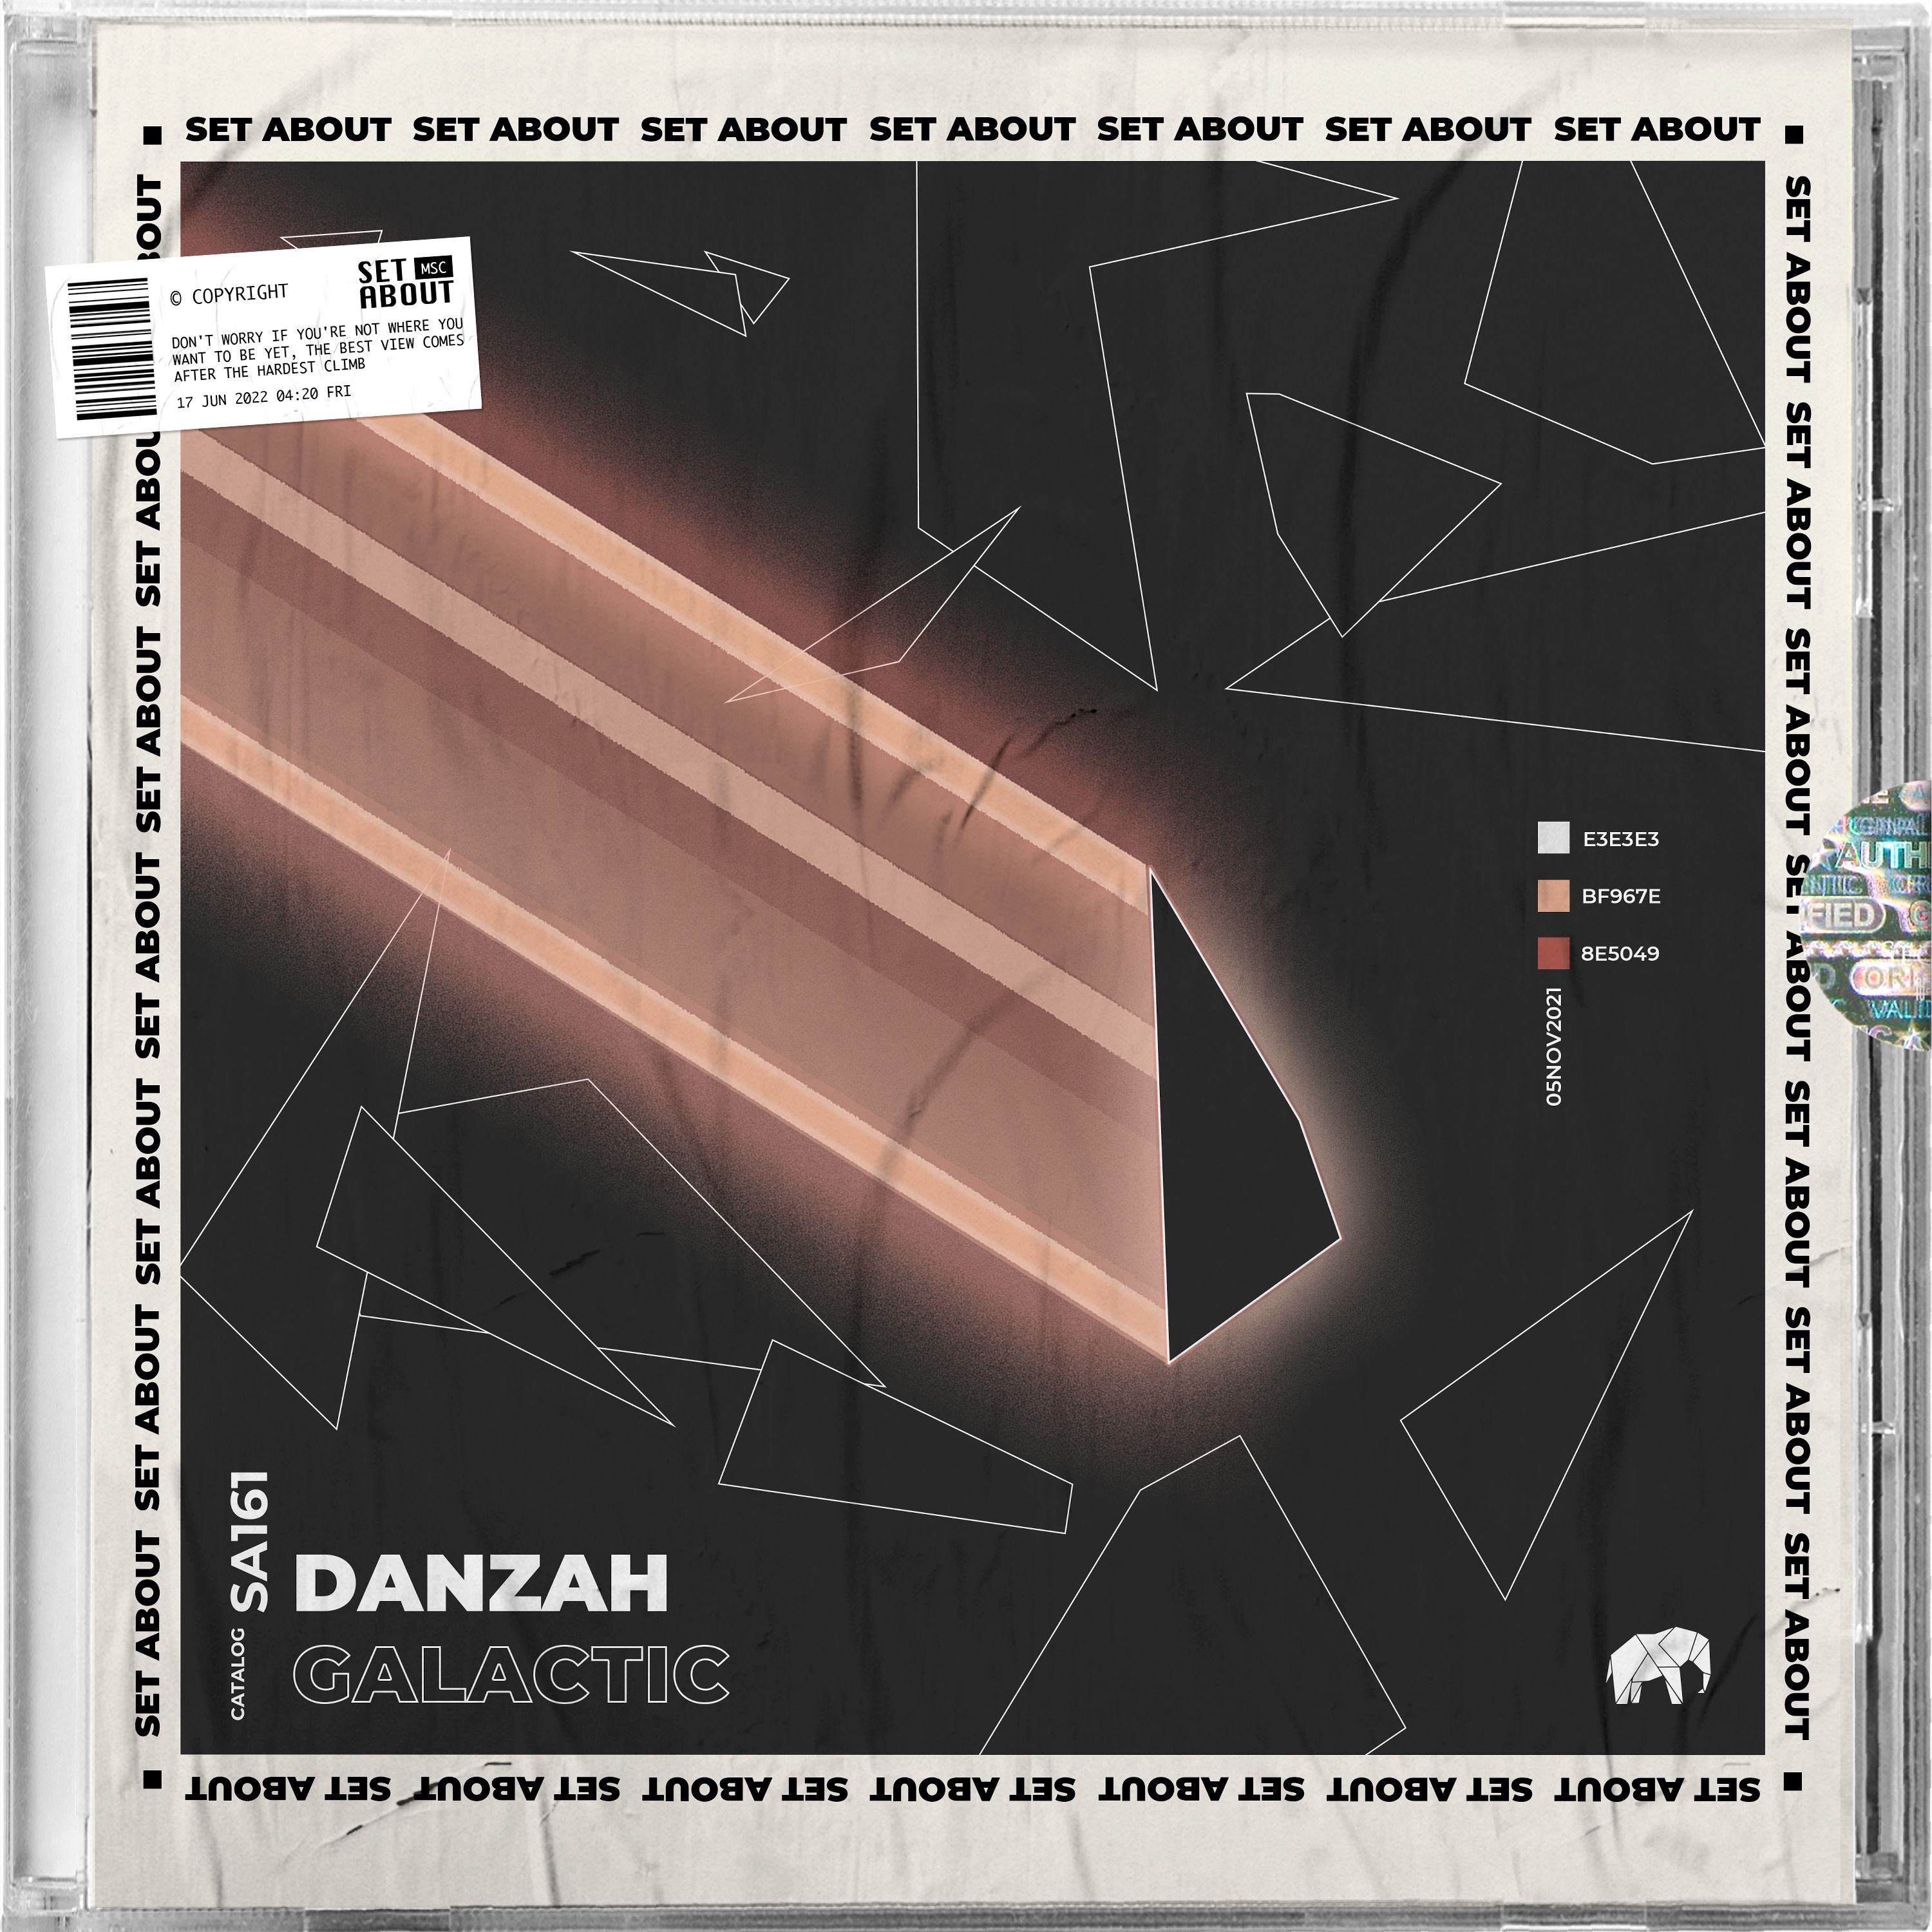 Télécharger PREMIERE: DANZAH - Galactic (Original Mix) [Set About]